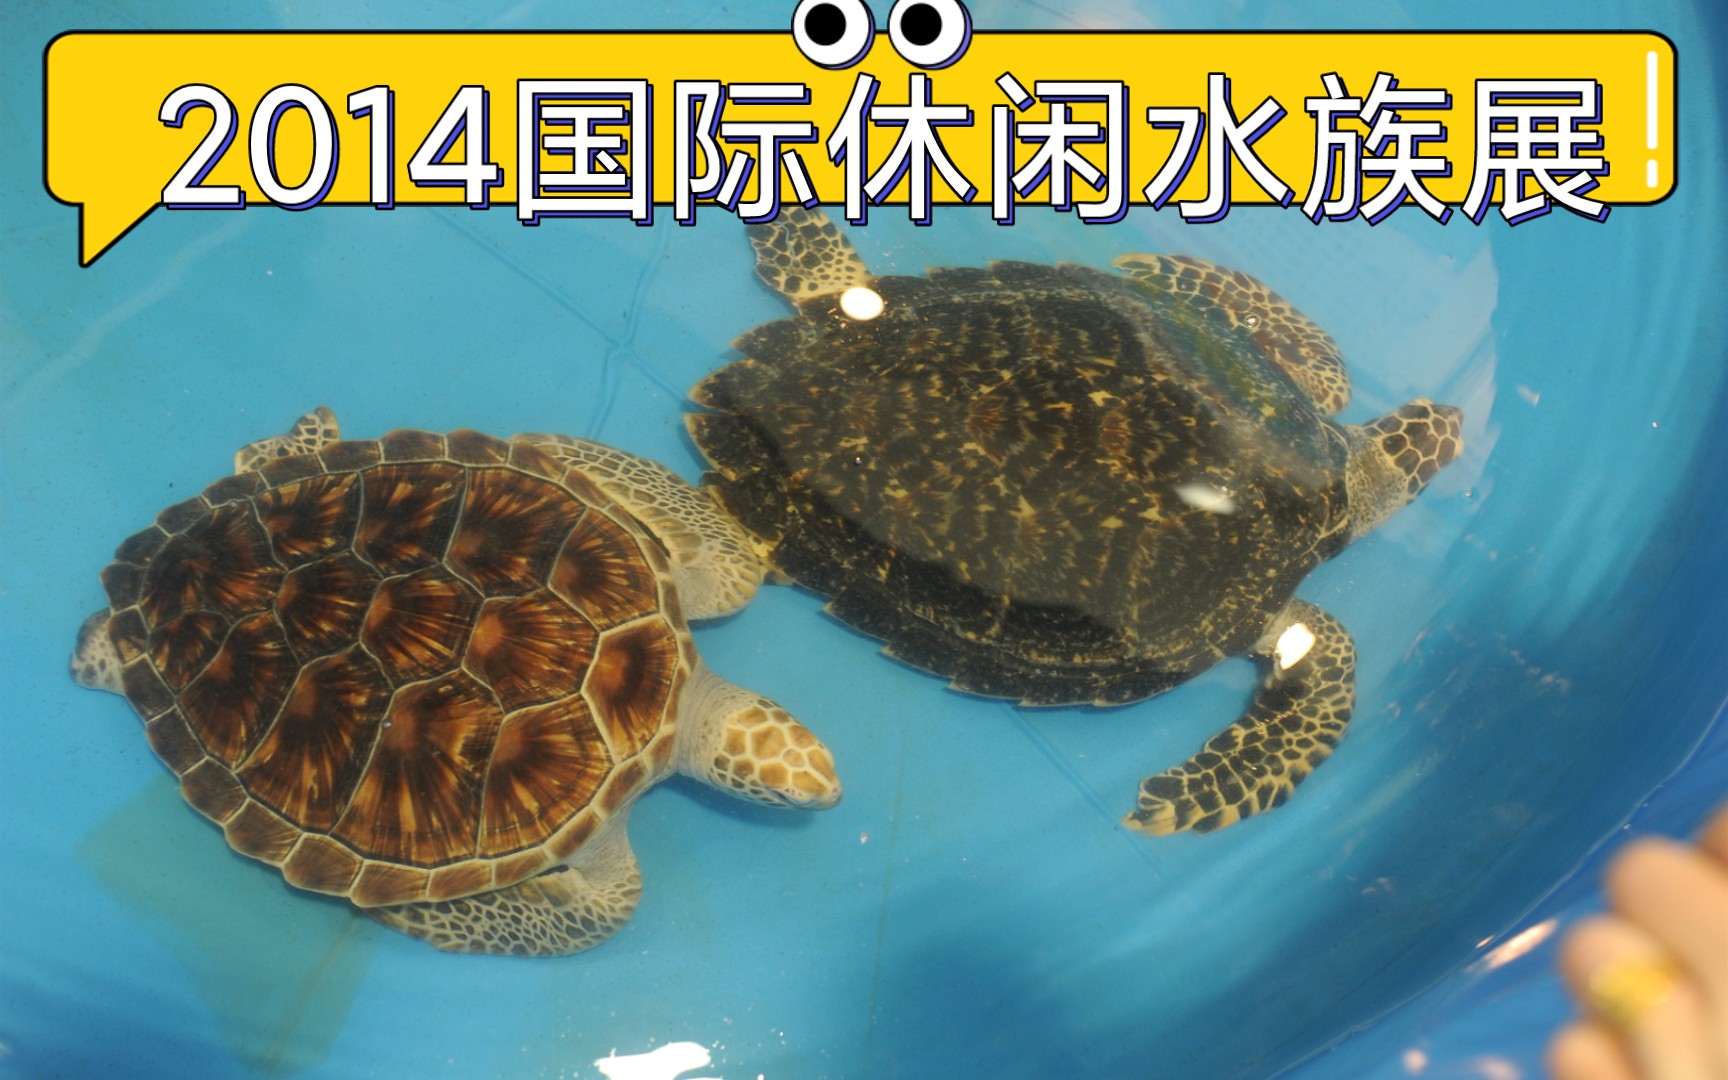 2014国际休闲水族展,上海农业展览馆,靠近上海西郊动物园,20141012